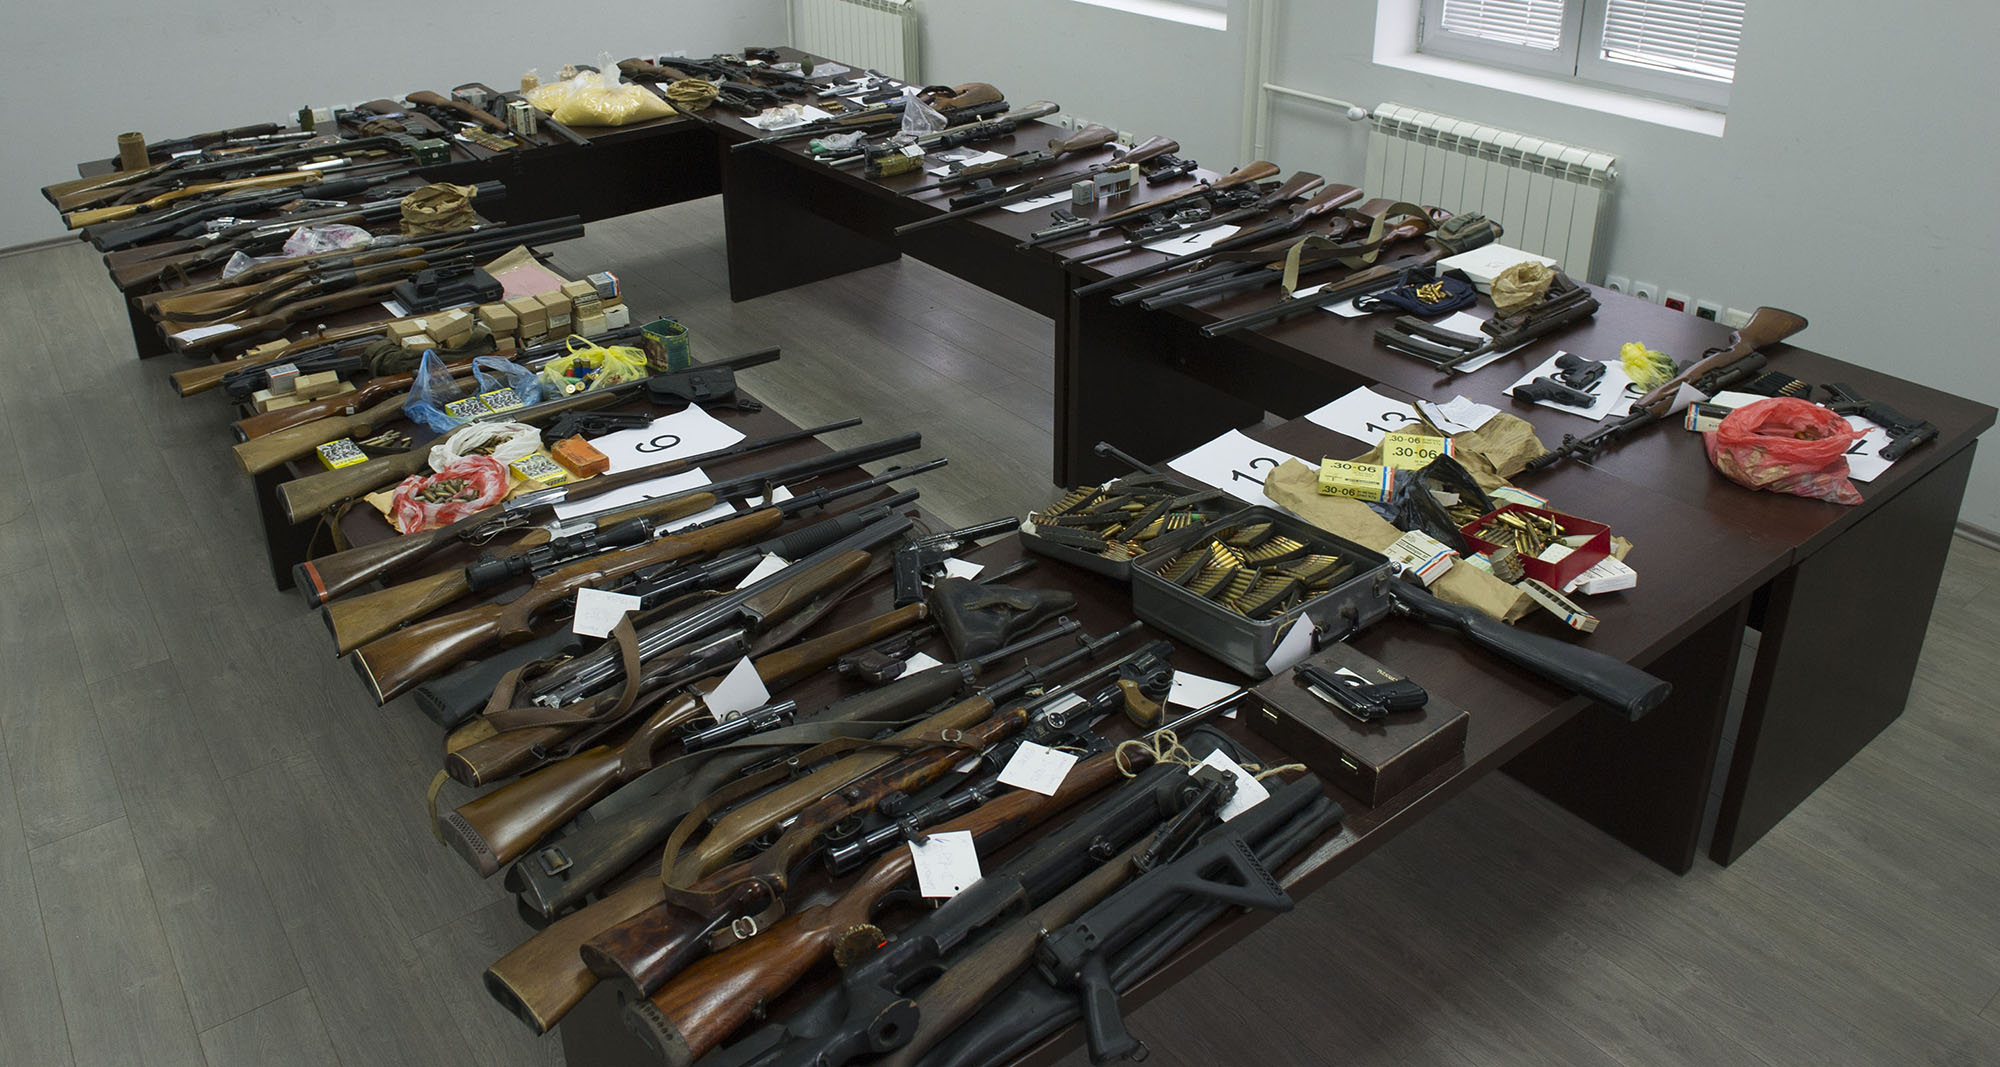 Pripadnici MUP-a zaplenili 128,5 kg narkotika, kao i veću količinu eksploziva, oružja i municije i uhapsili 139 osumnjičenih osoba